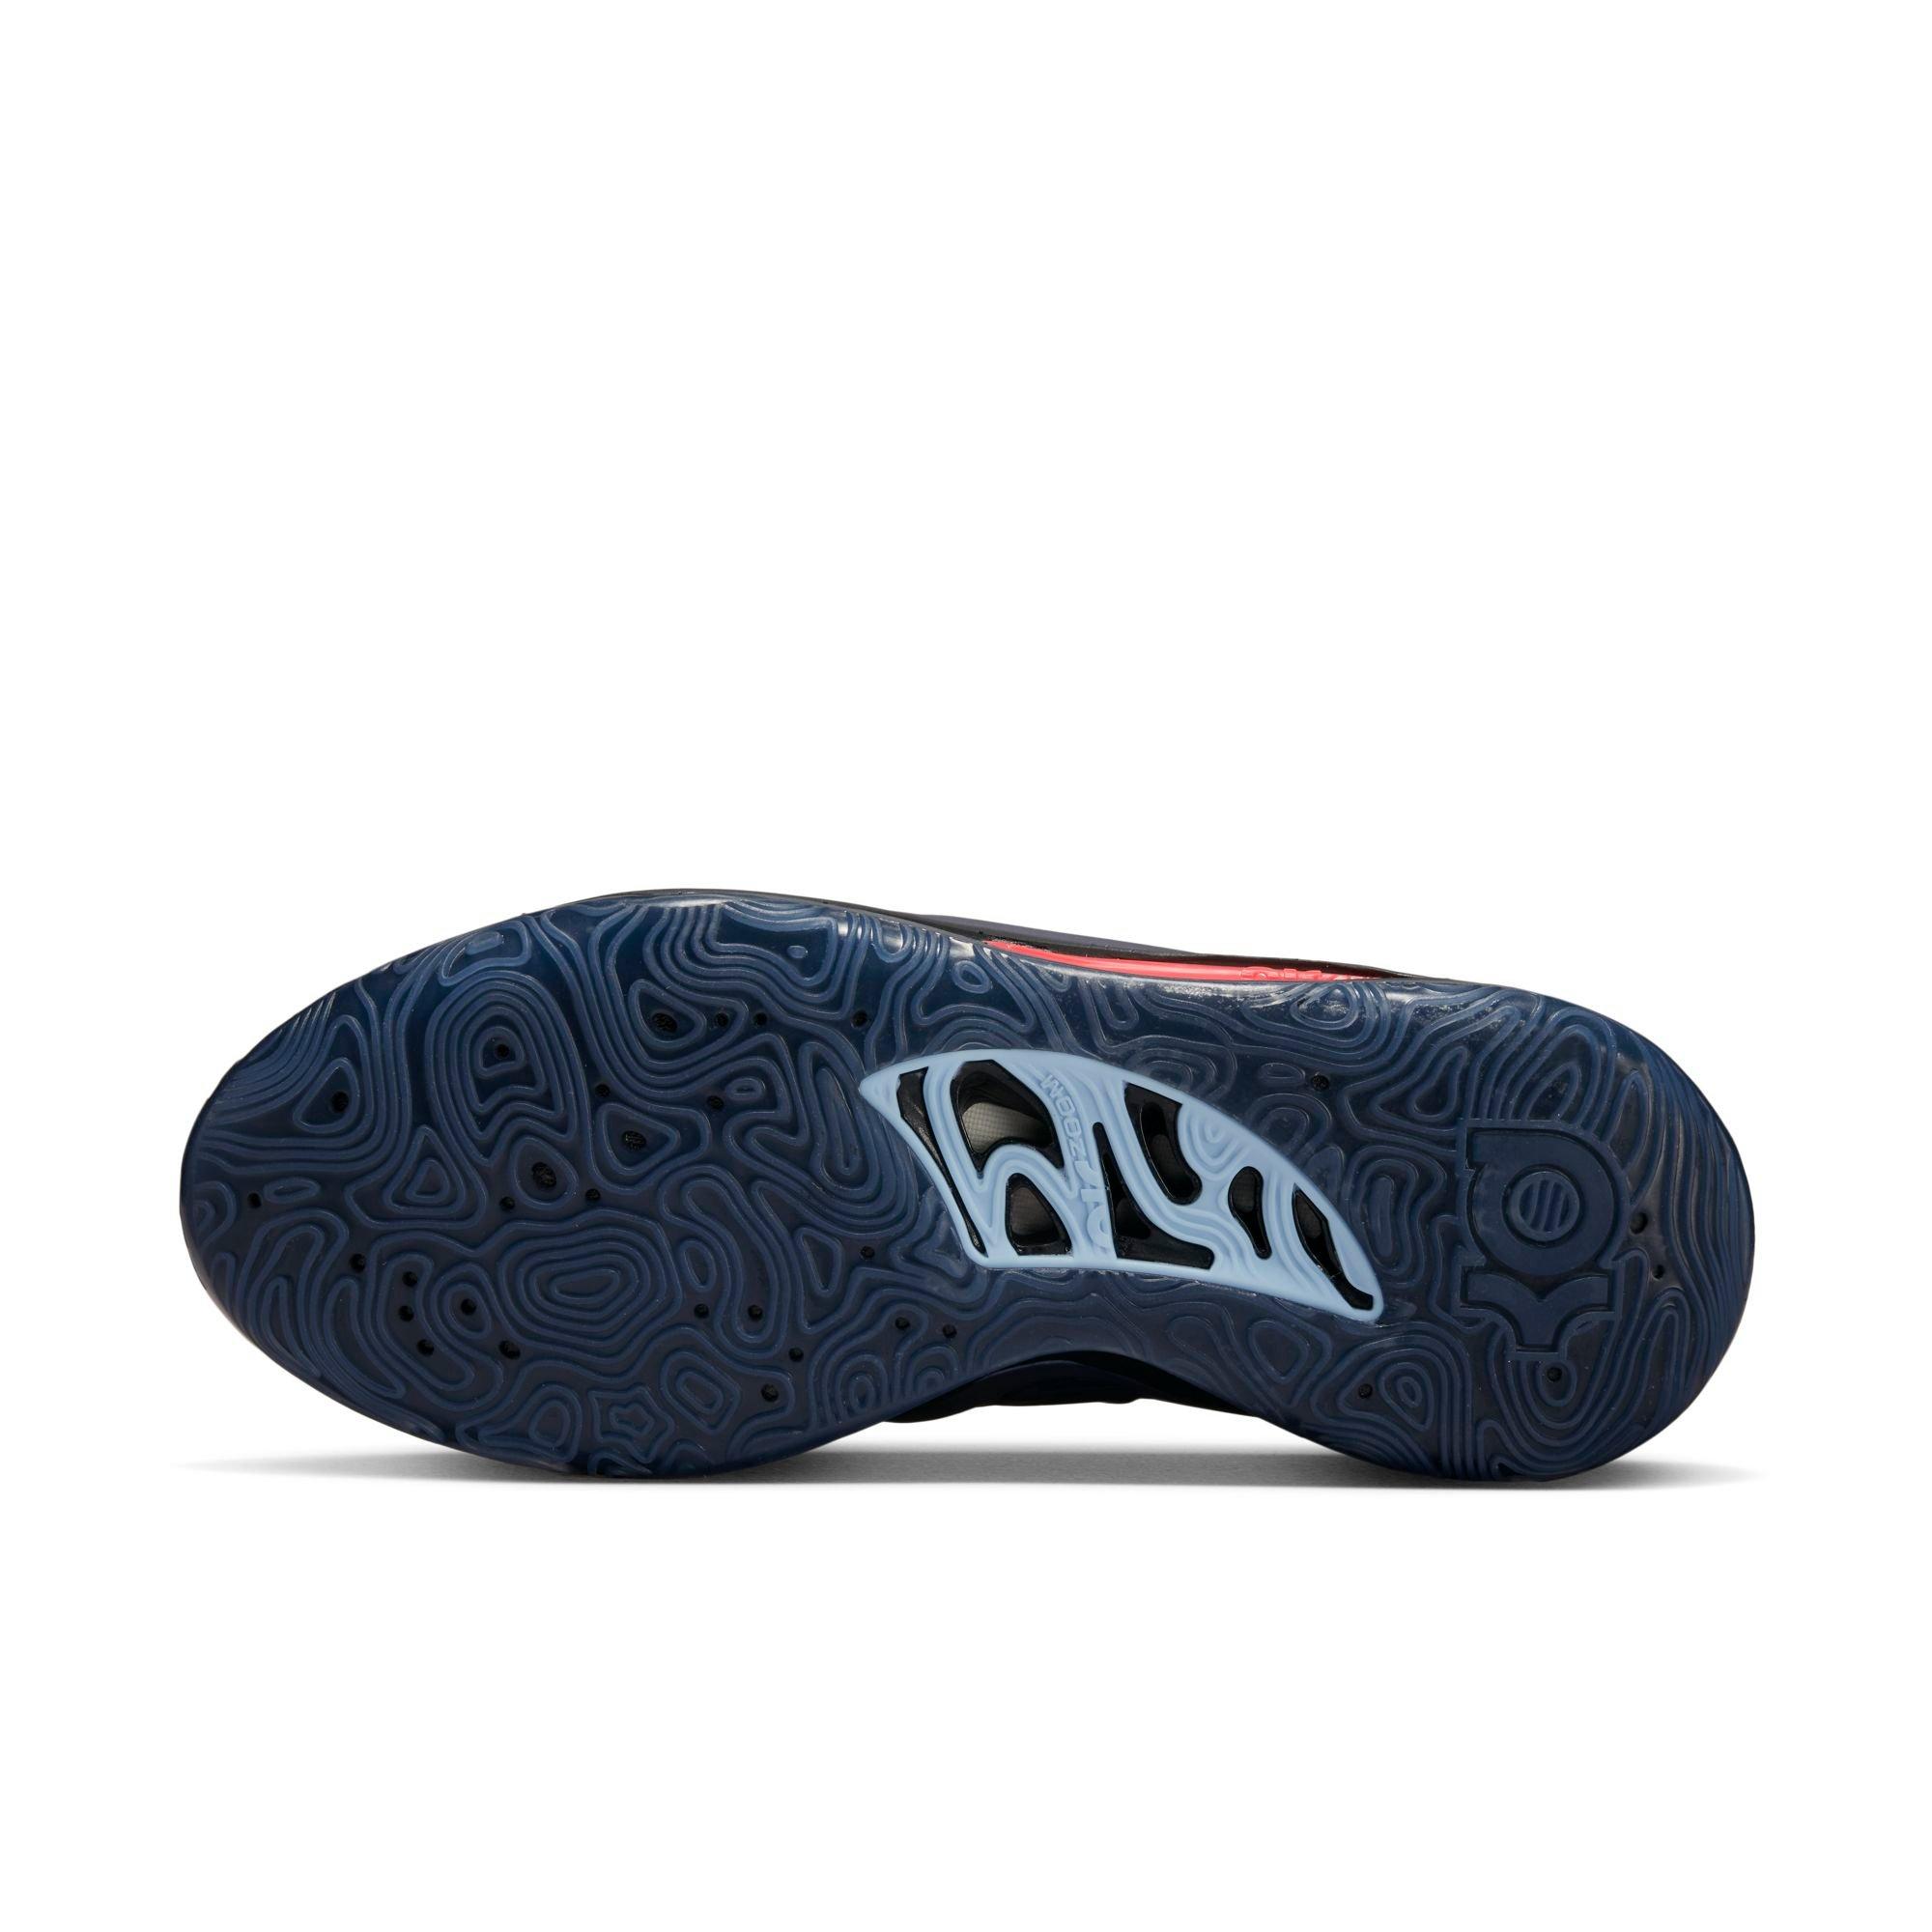 StclaircomoShops - Nike Zoom KD 15 Black Royal Tint White DM1054